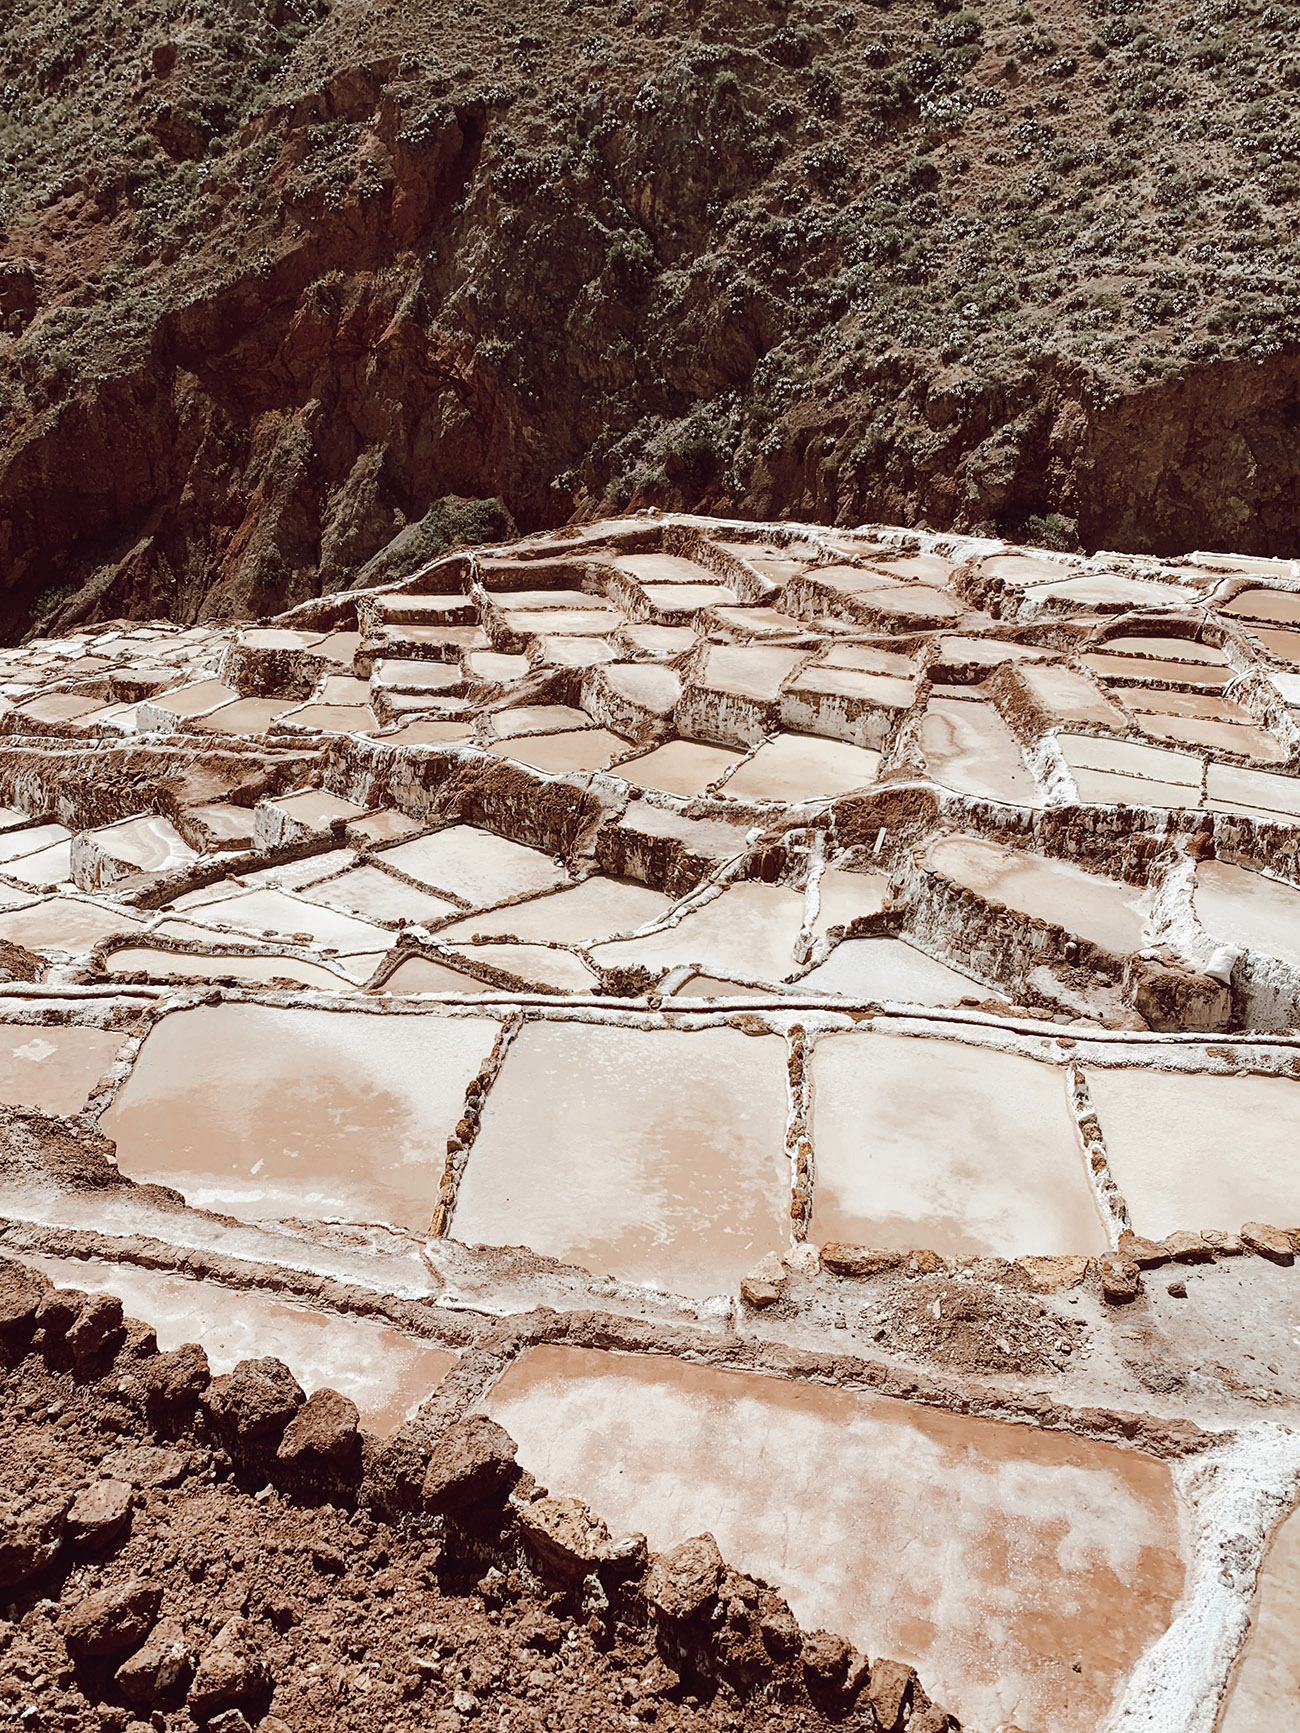 Maras Salt Mines in Peru